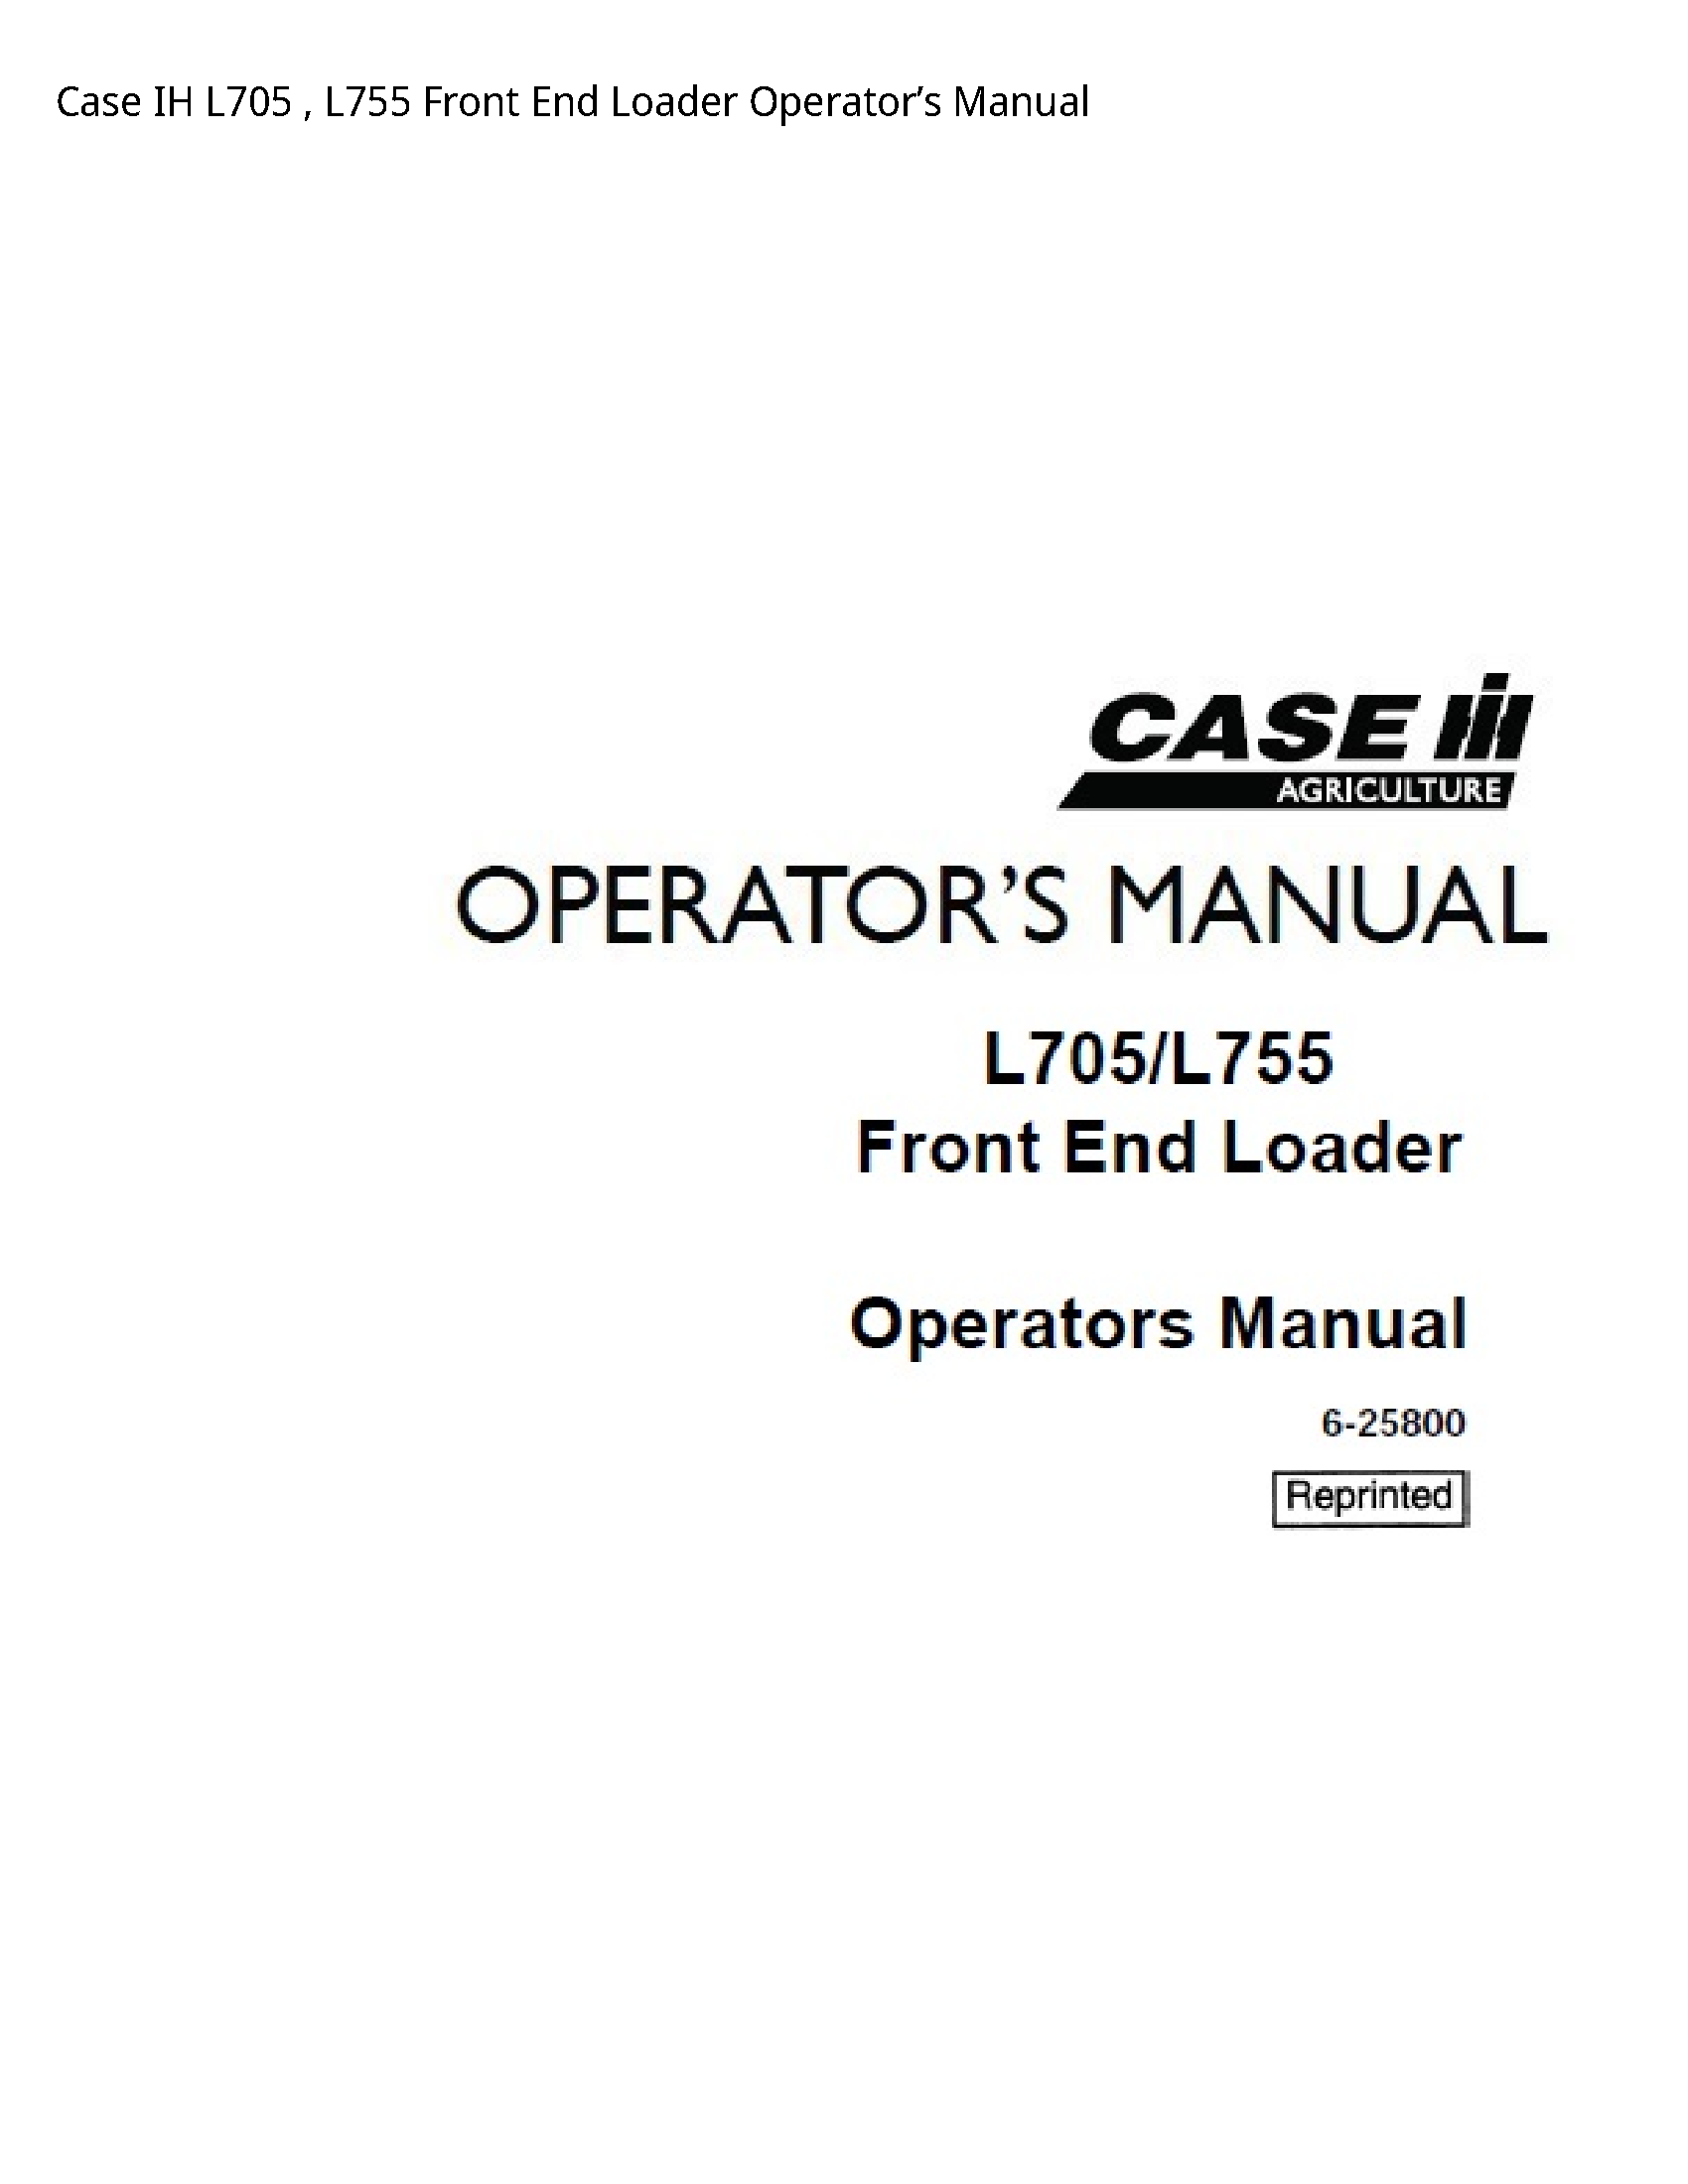 Case/Case IH L705 IH Front End Loader Operator’s manual